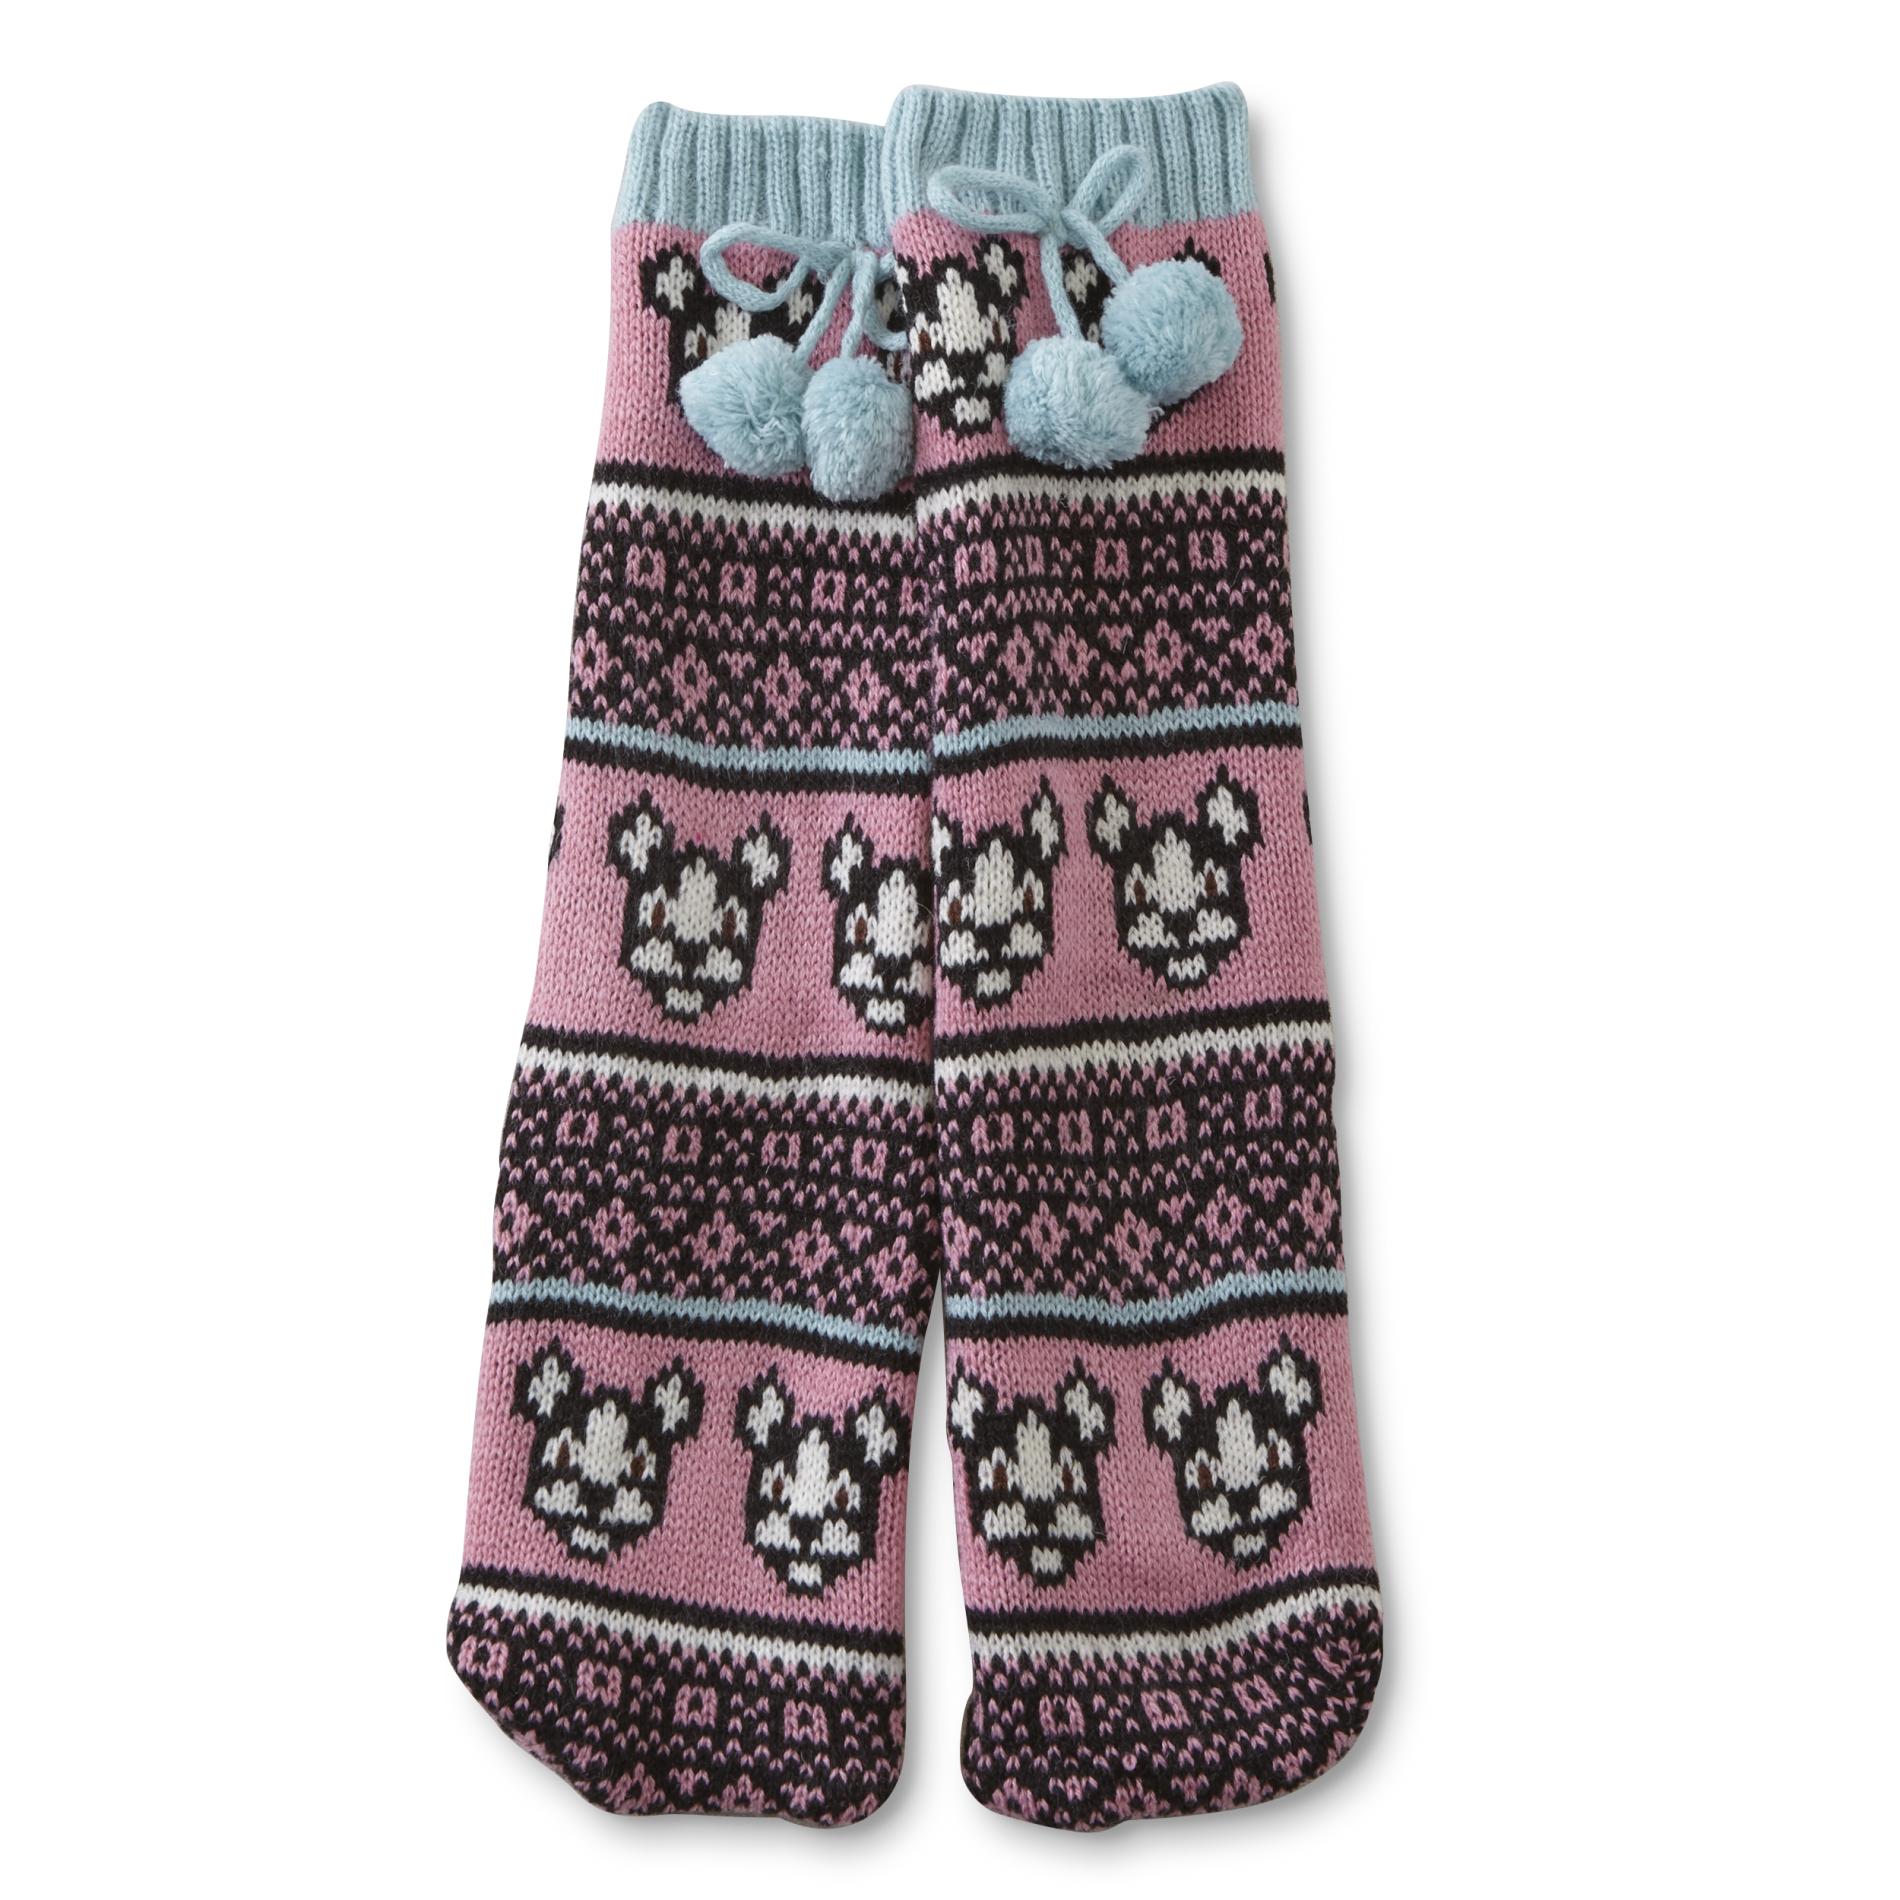 Joe Boxer Girls' Slipper Socks - Striped & Dogs